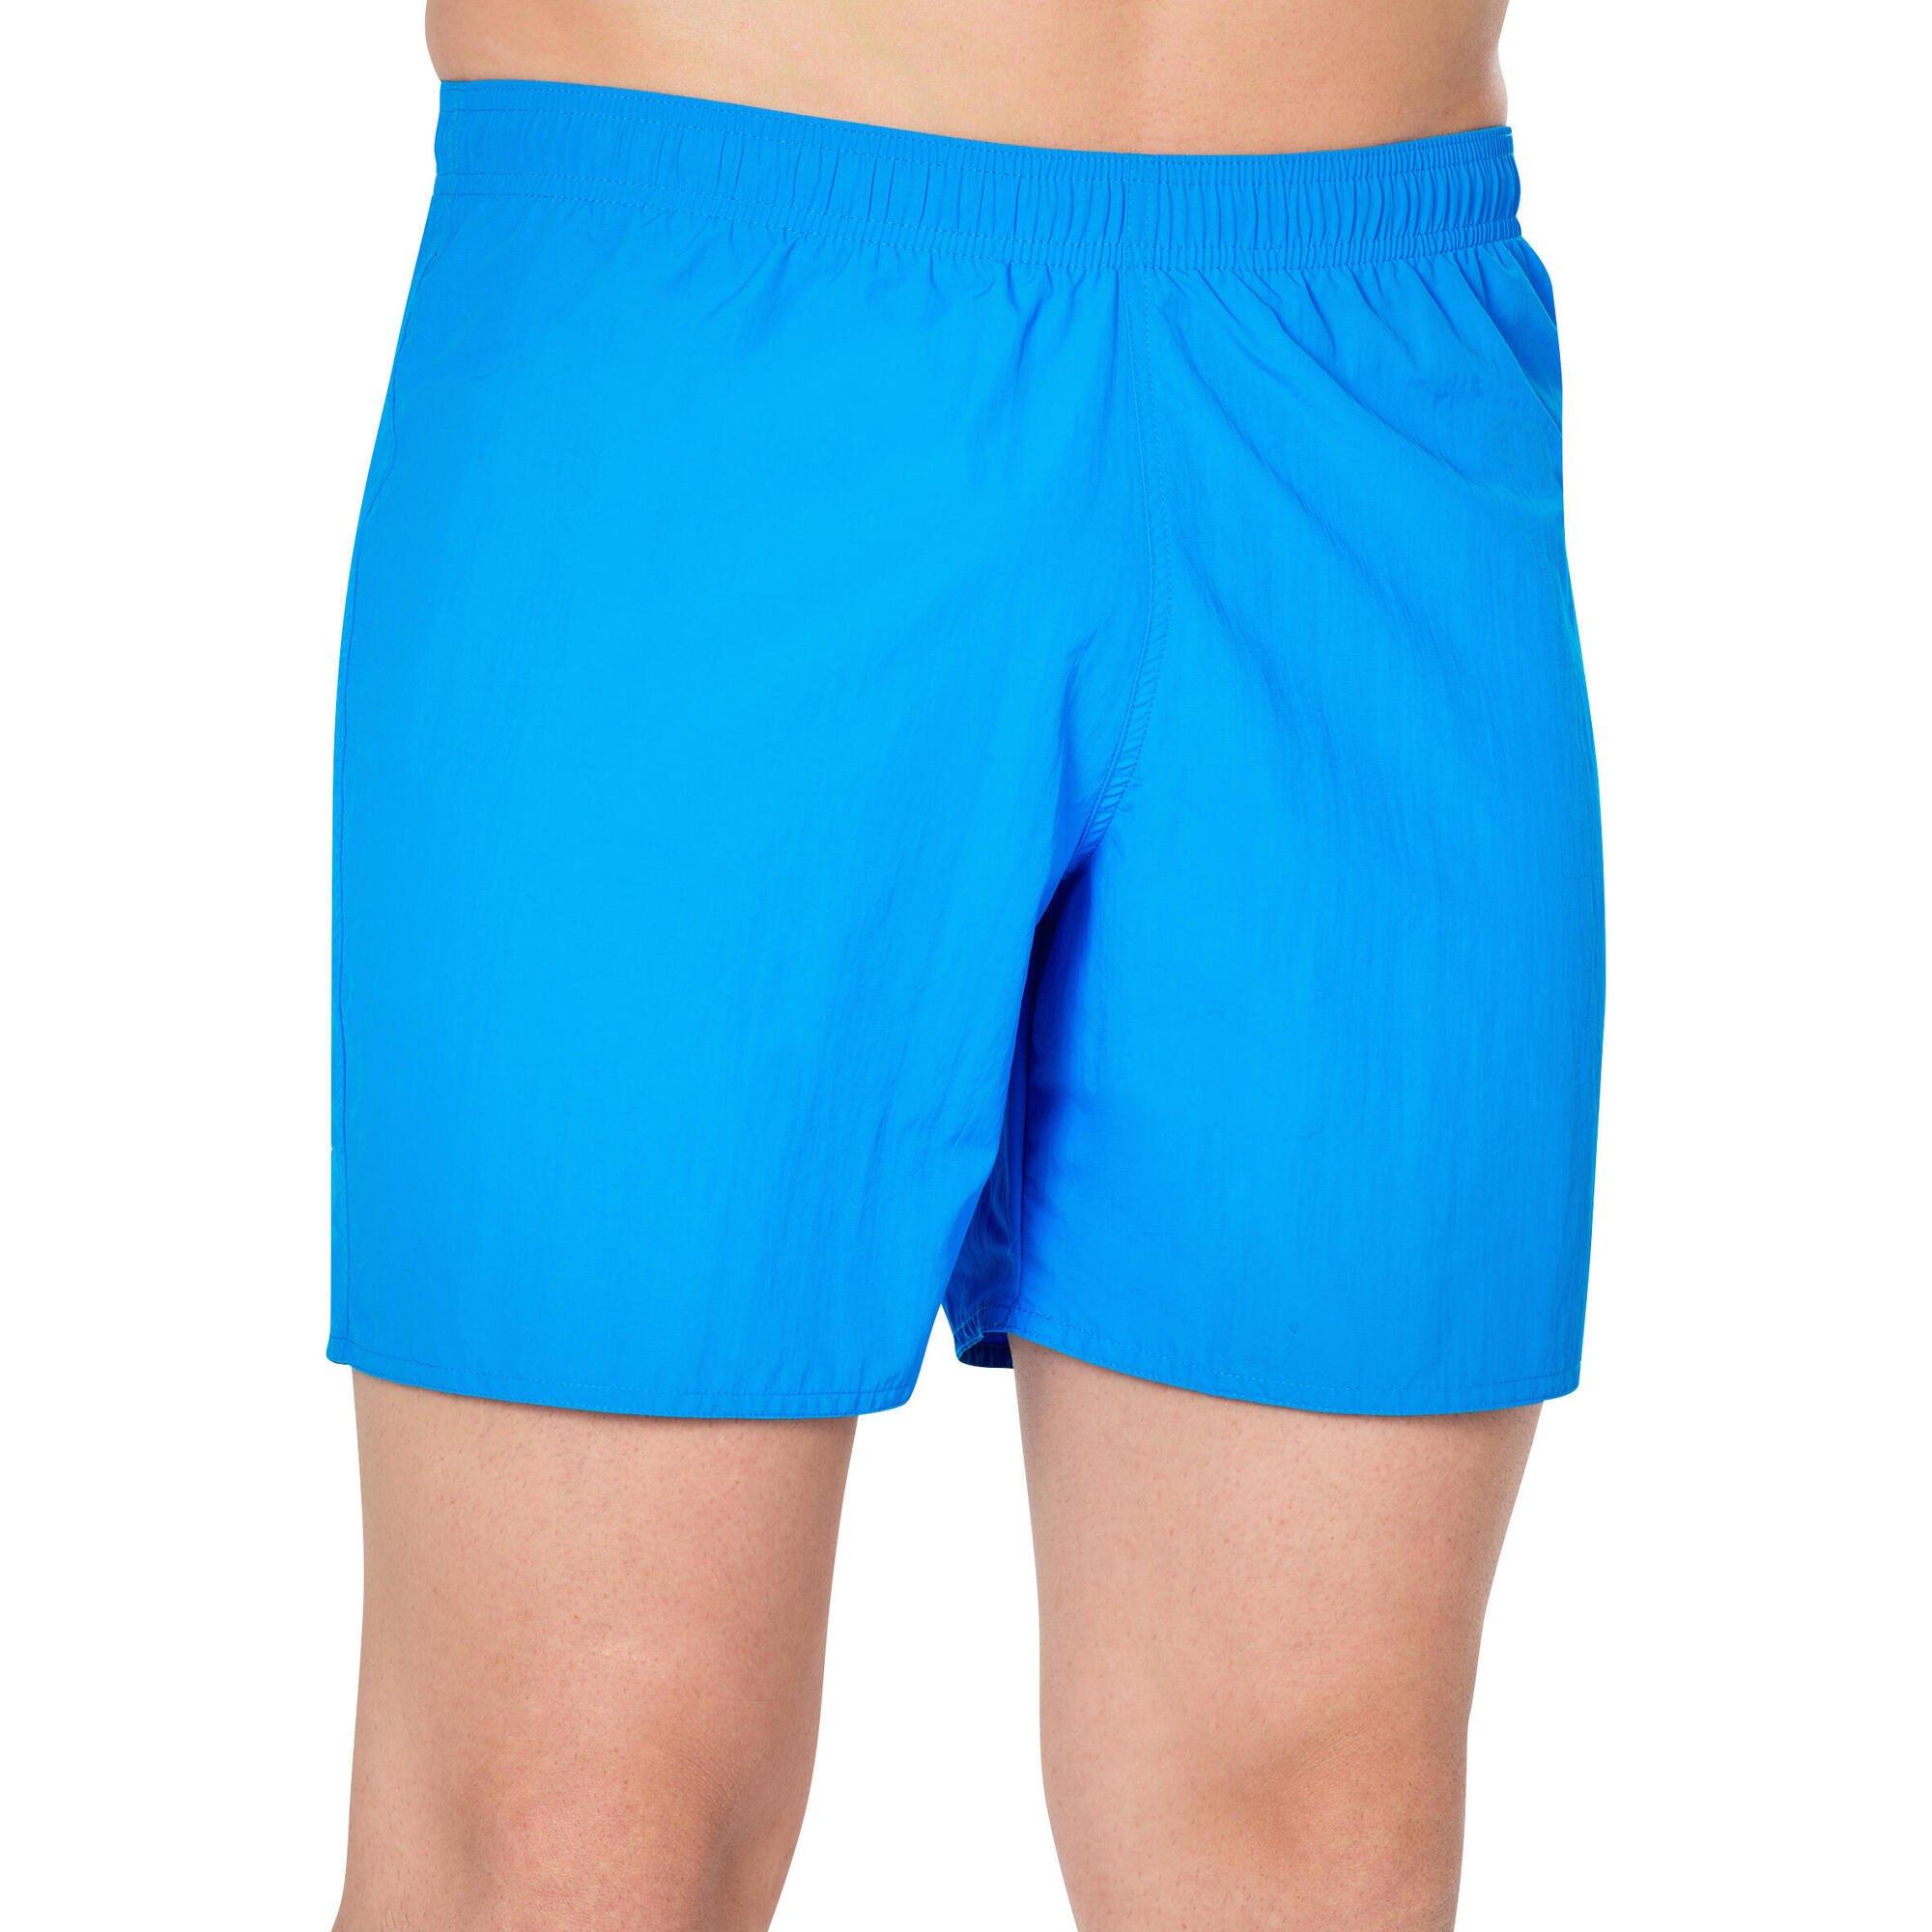 Шорты для плавания Decathlon 100 Basic — легкие Nabaiji, синий шорты для плавания clever подкладка уф защита устойчивые к хлору размер s красный